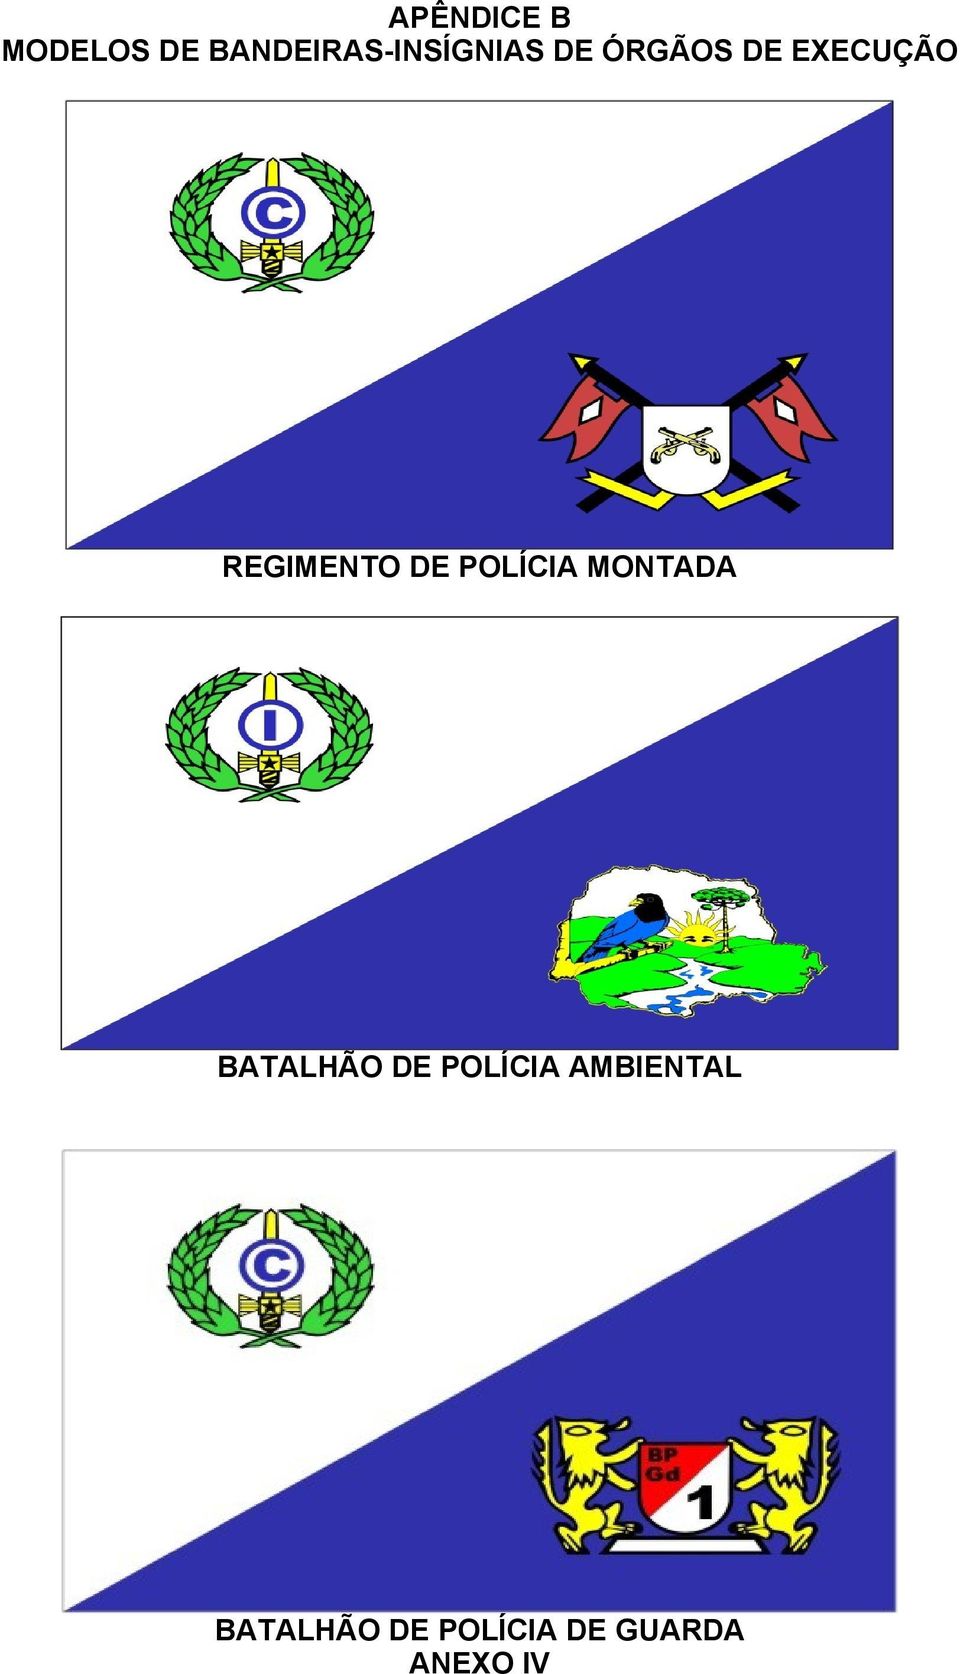 EXECUÇÃO REGIMENTO DE POLÍCIA MONTADA